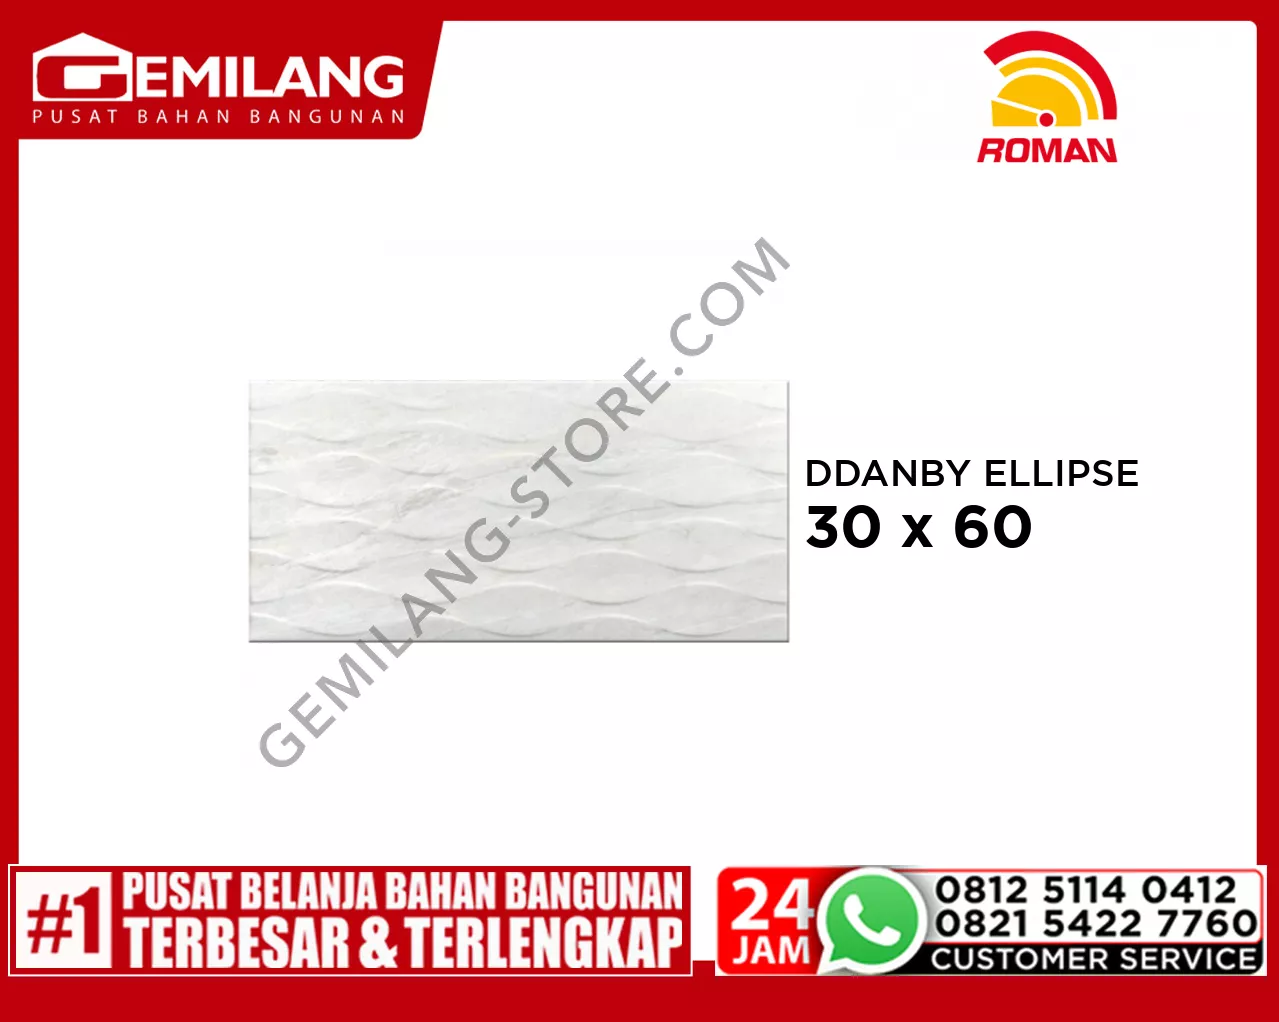 ROMAN DDANBY ELLIPSE (W63849T) 30 x 60